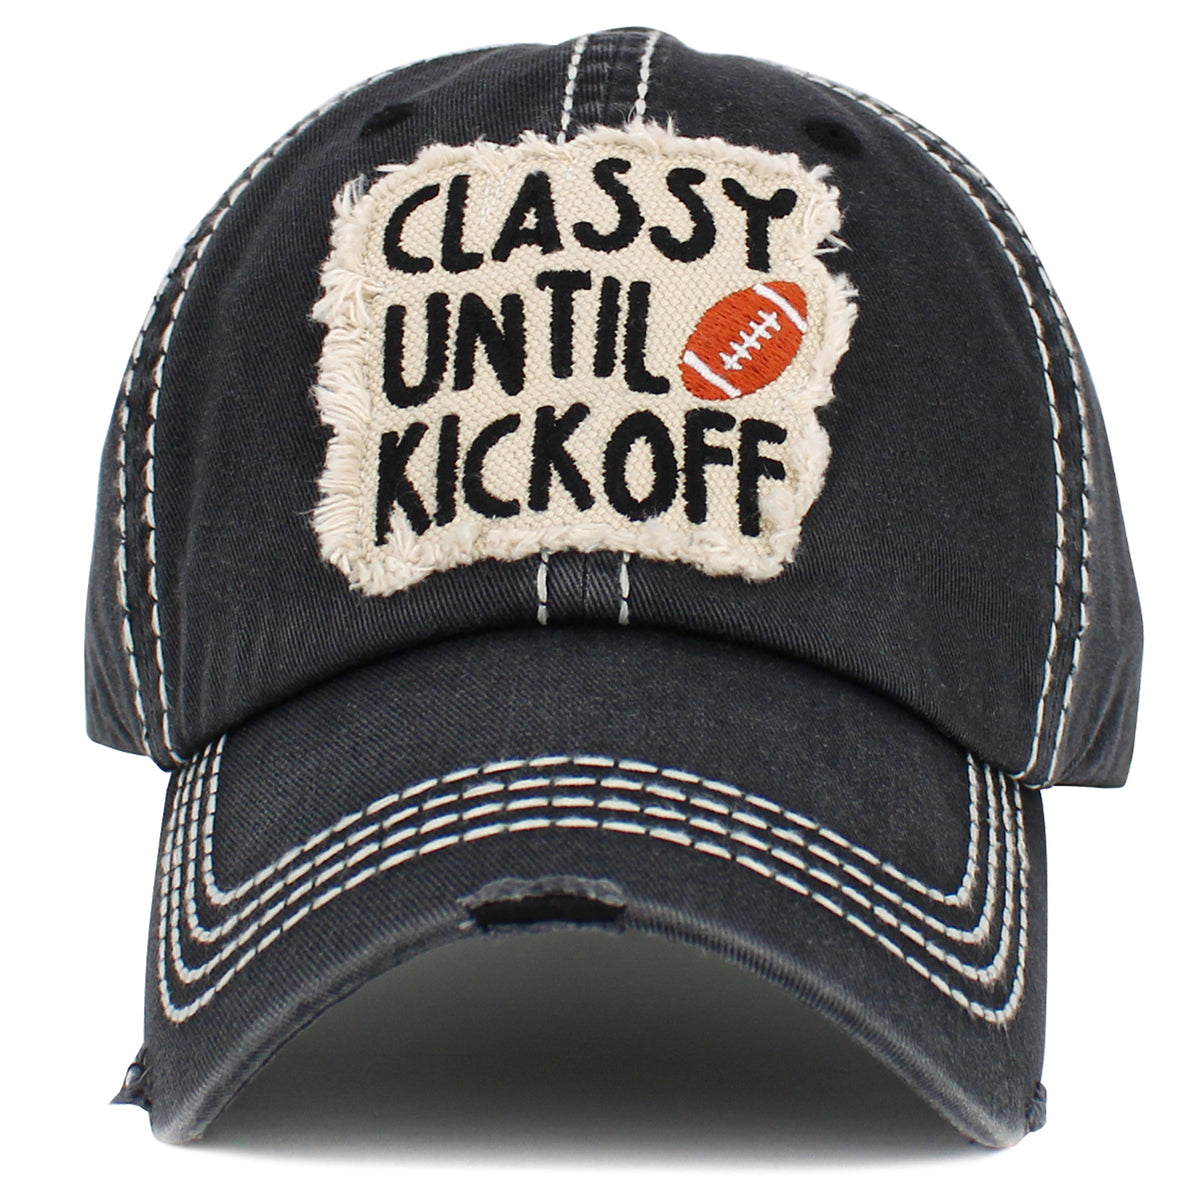 1529 - Classy Until Kickoff Hat - Black